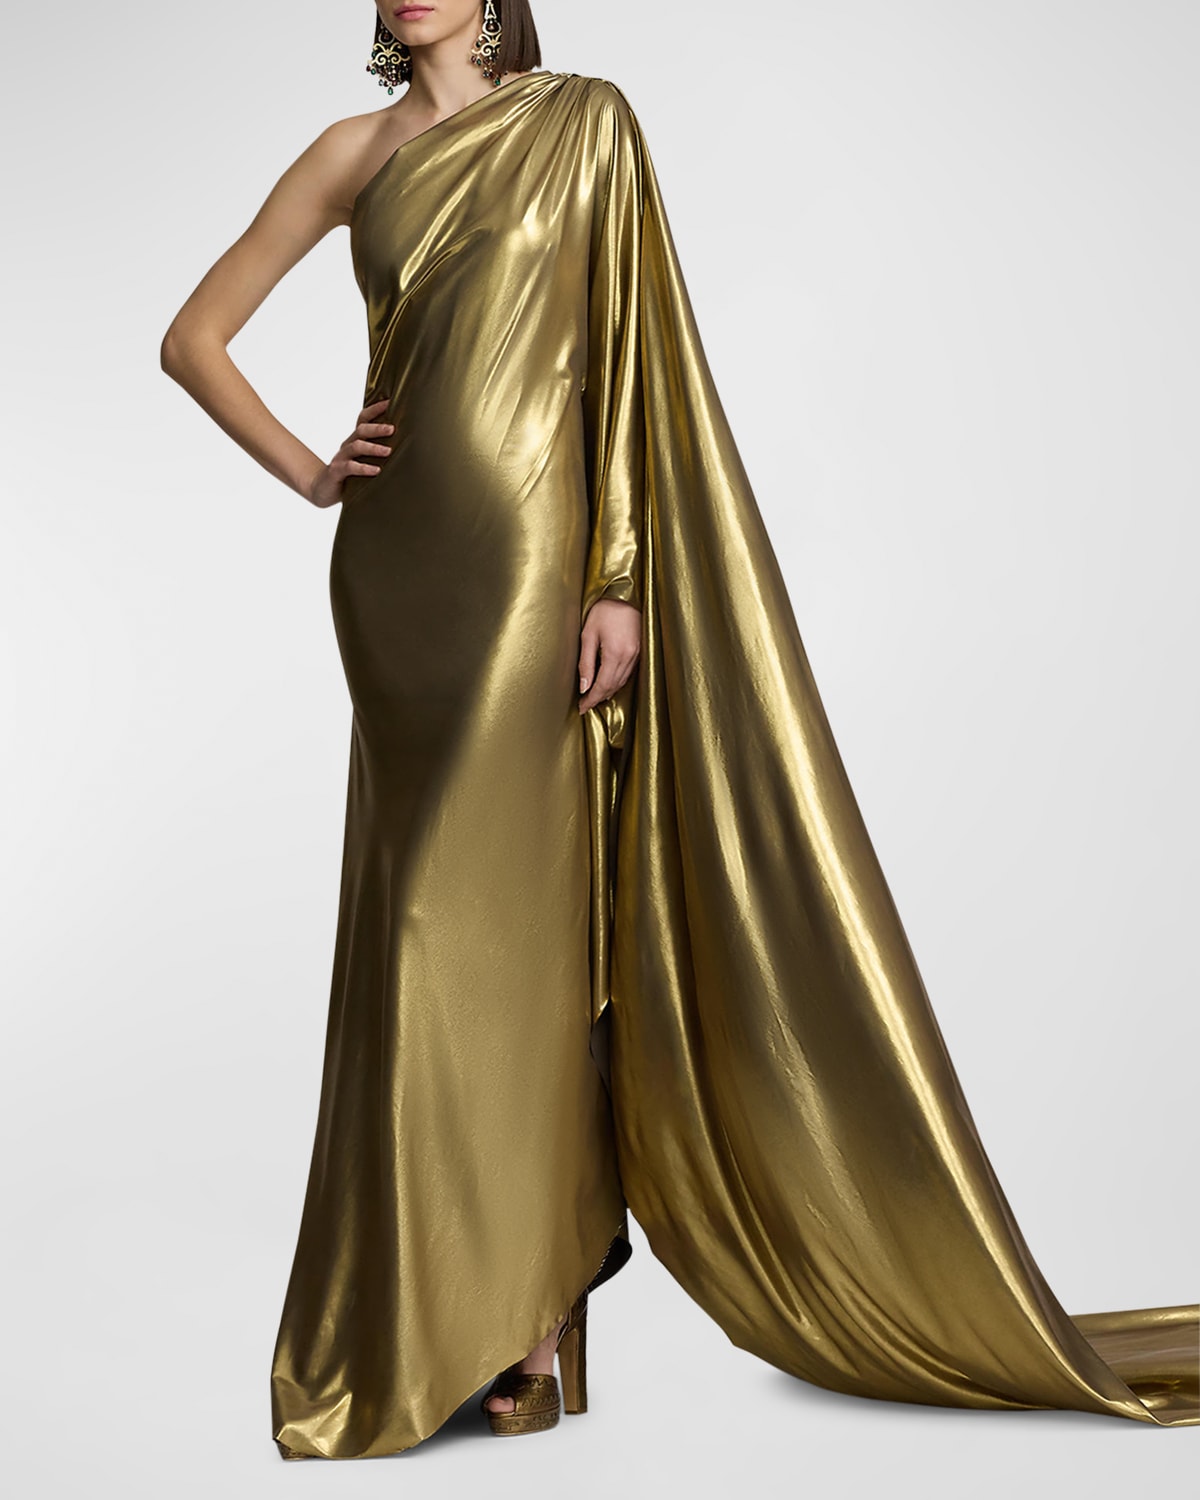 Ralph Lauren Jackeline One-shoulder Metallic Gown In Gold